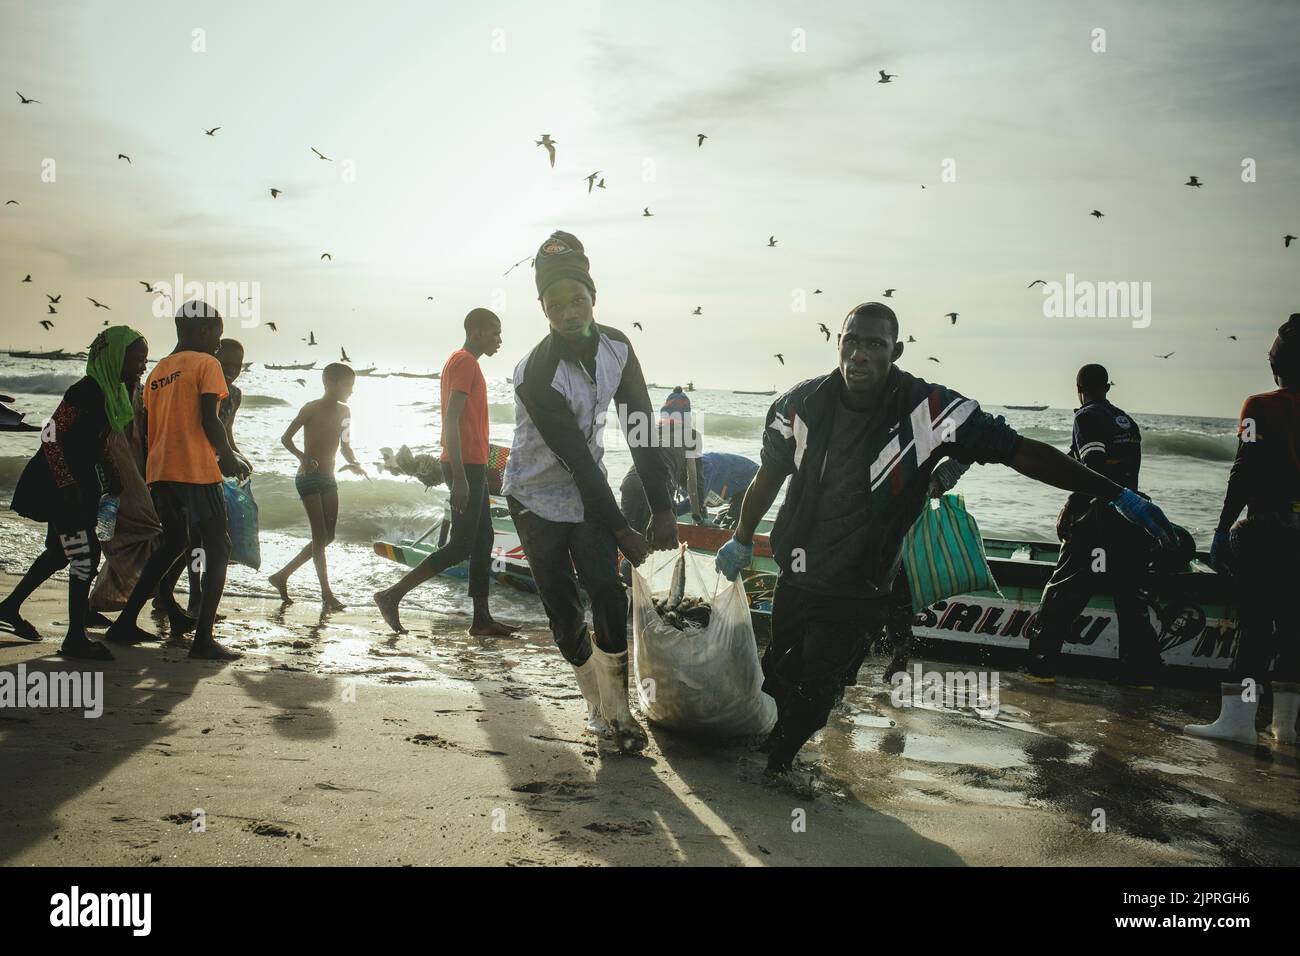 Arrivée des pêcheurs avec des sardines en fin d'après-midi, les pêcheurs chargent les sardines dans des sacs du bateau sur la plage et là sur Banque D'Images